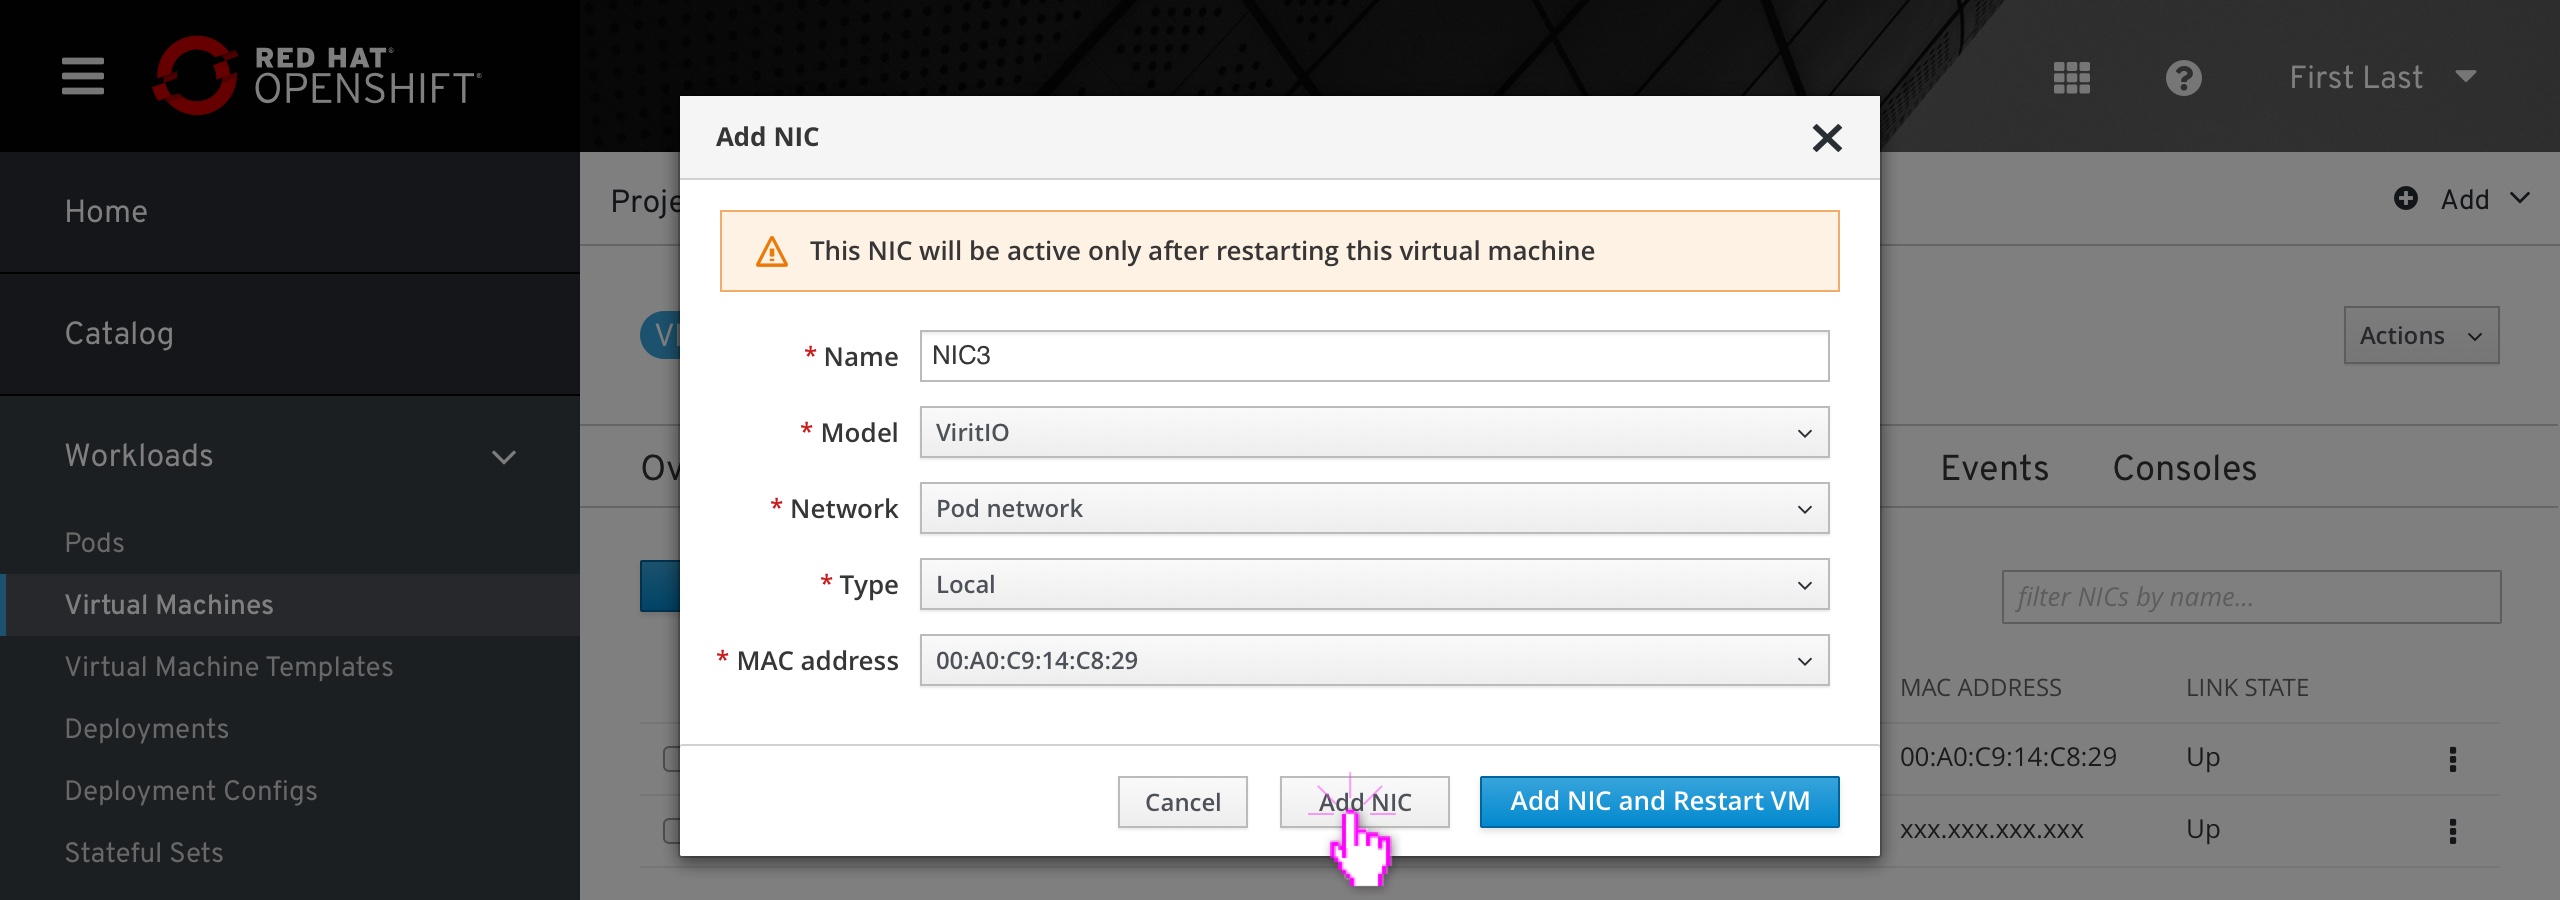 VM - add NIC modal - filled in